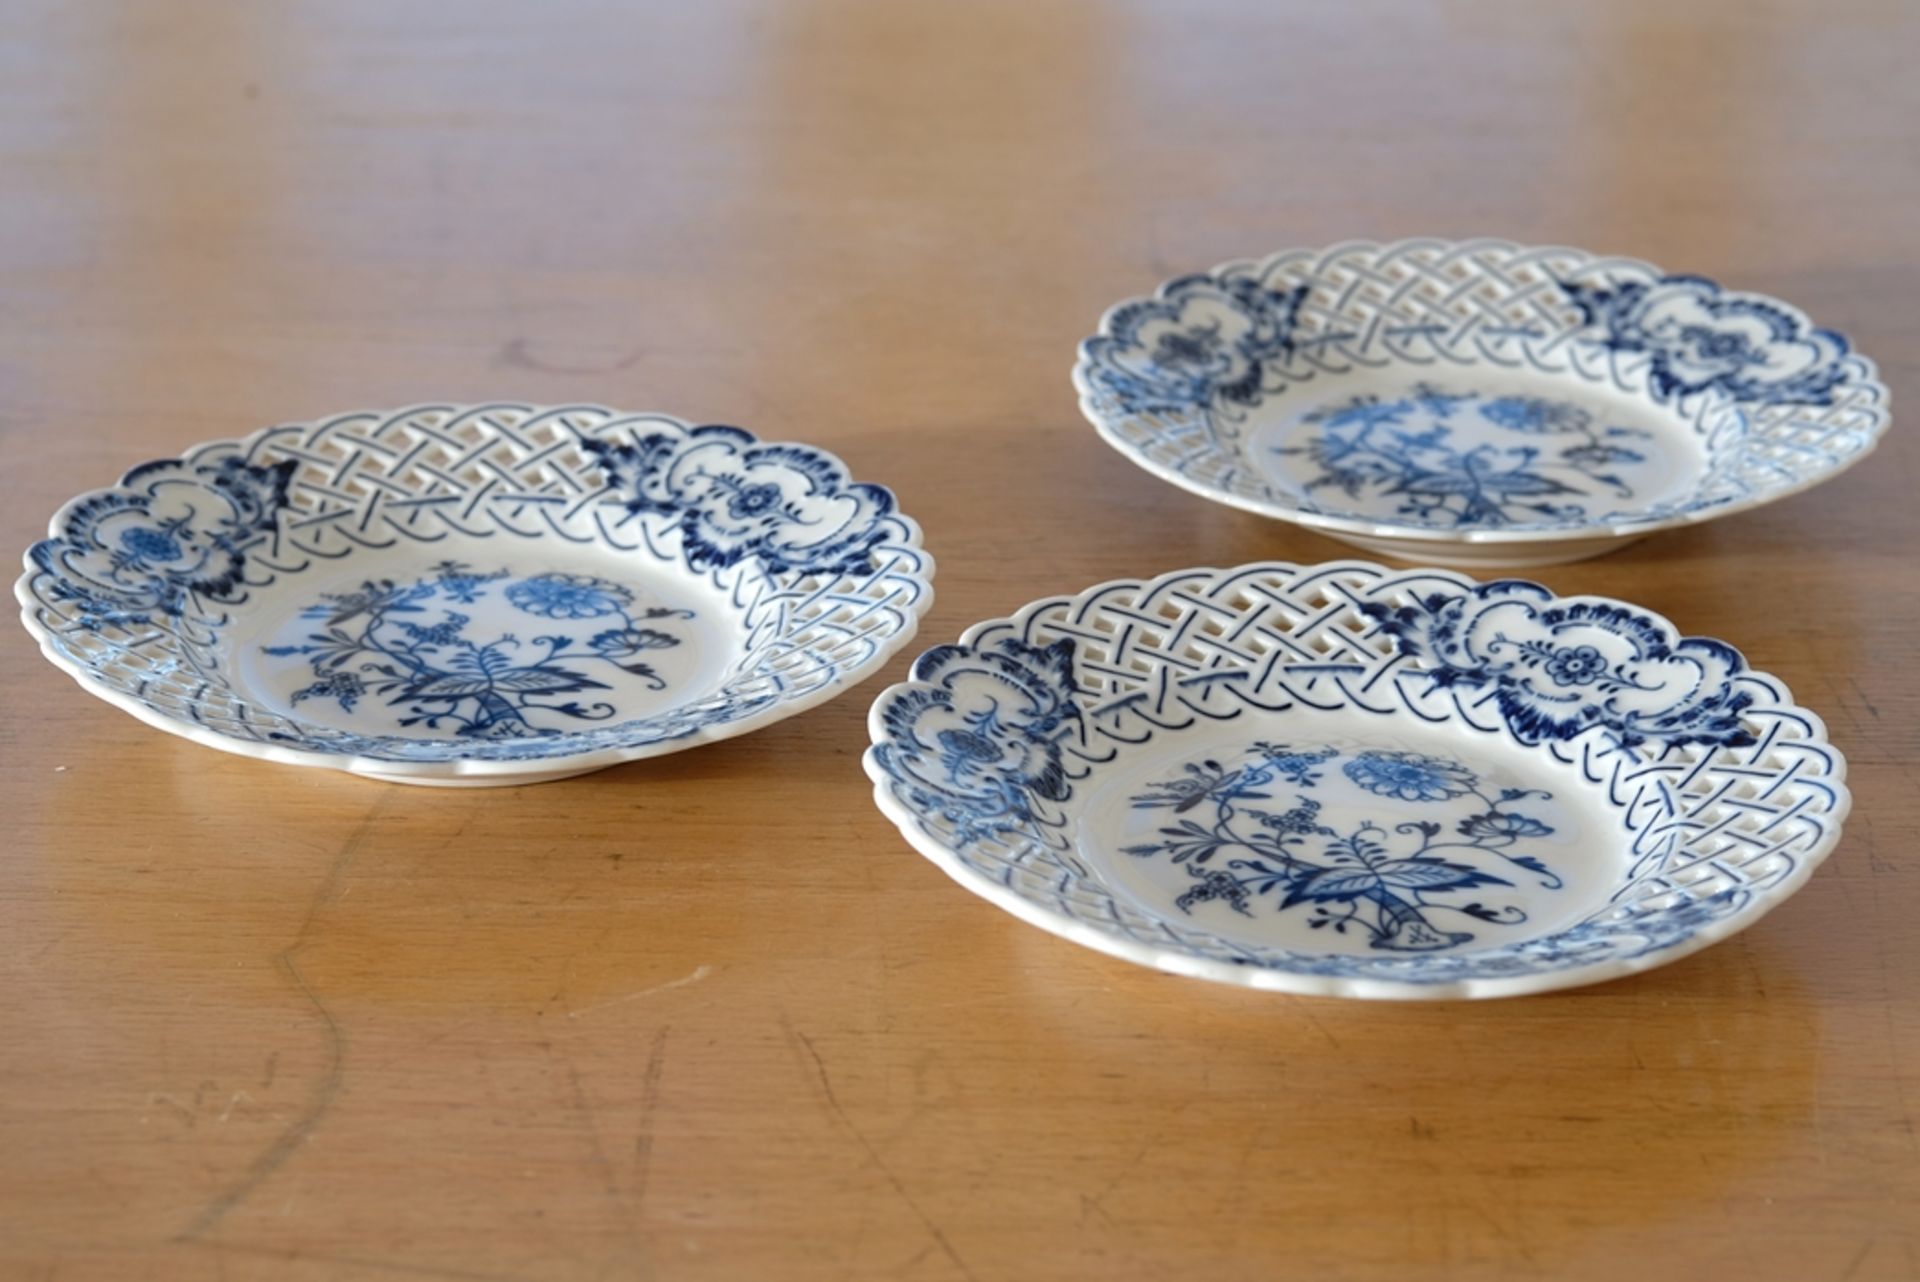 Three Meissen openwork plates, onion pattern in blue, pierced wavy rim, Meissen sword mark, mould n